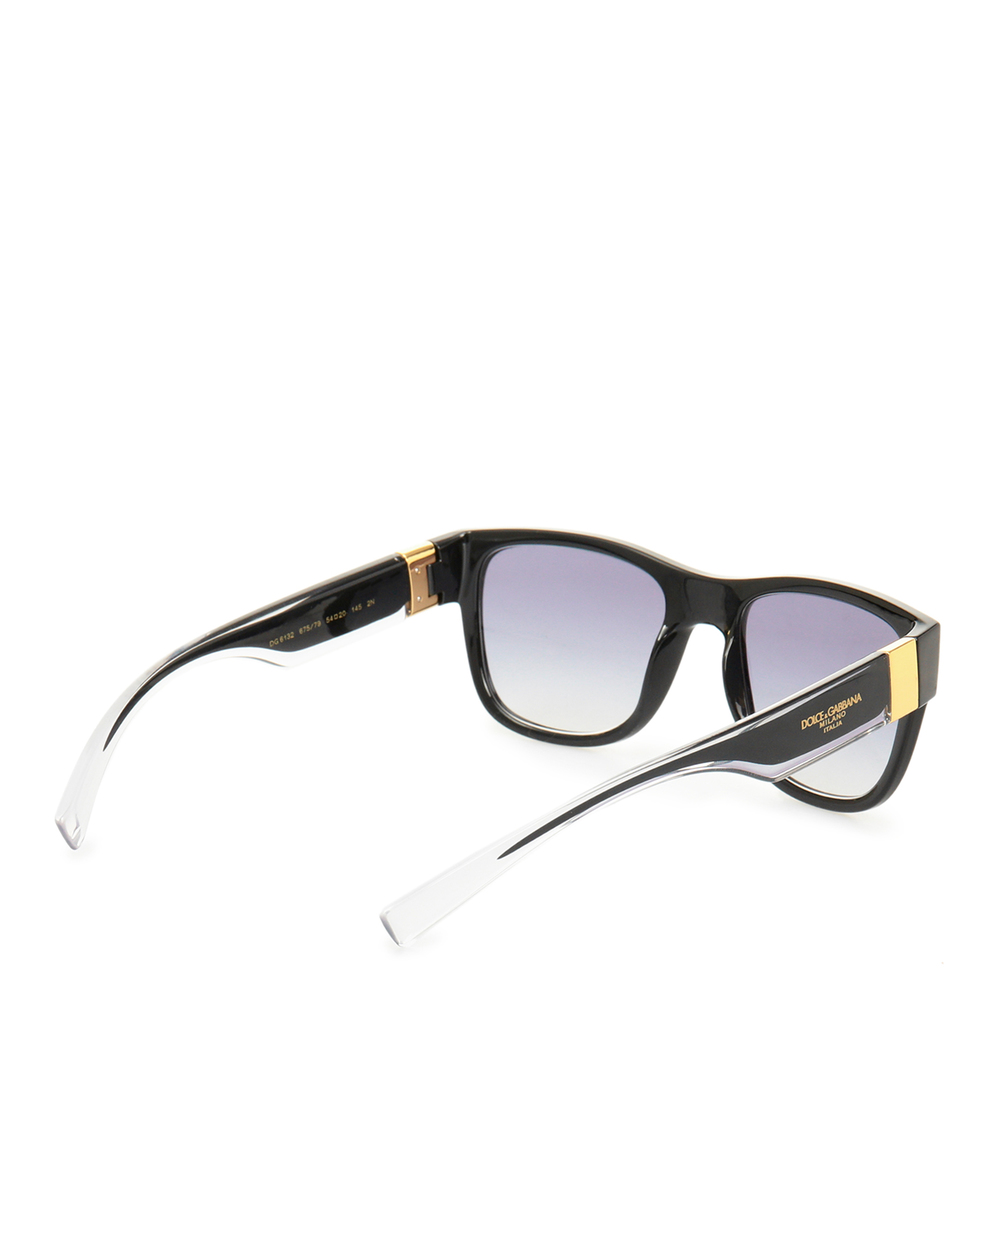 Солнцезащитные очки Dolce&Gabbana 6132675/7954, черный цвет • Купить в интернет-магазине Kameron